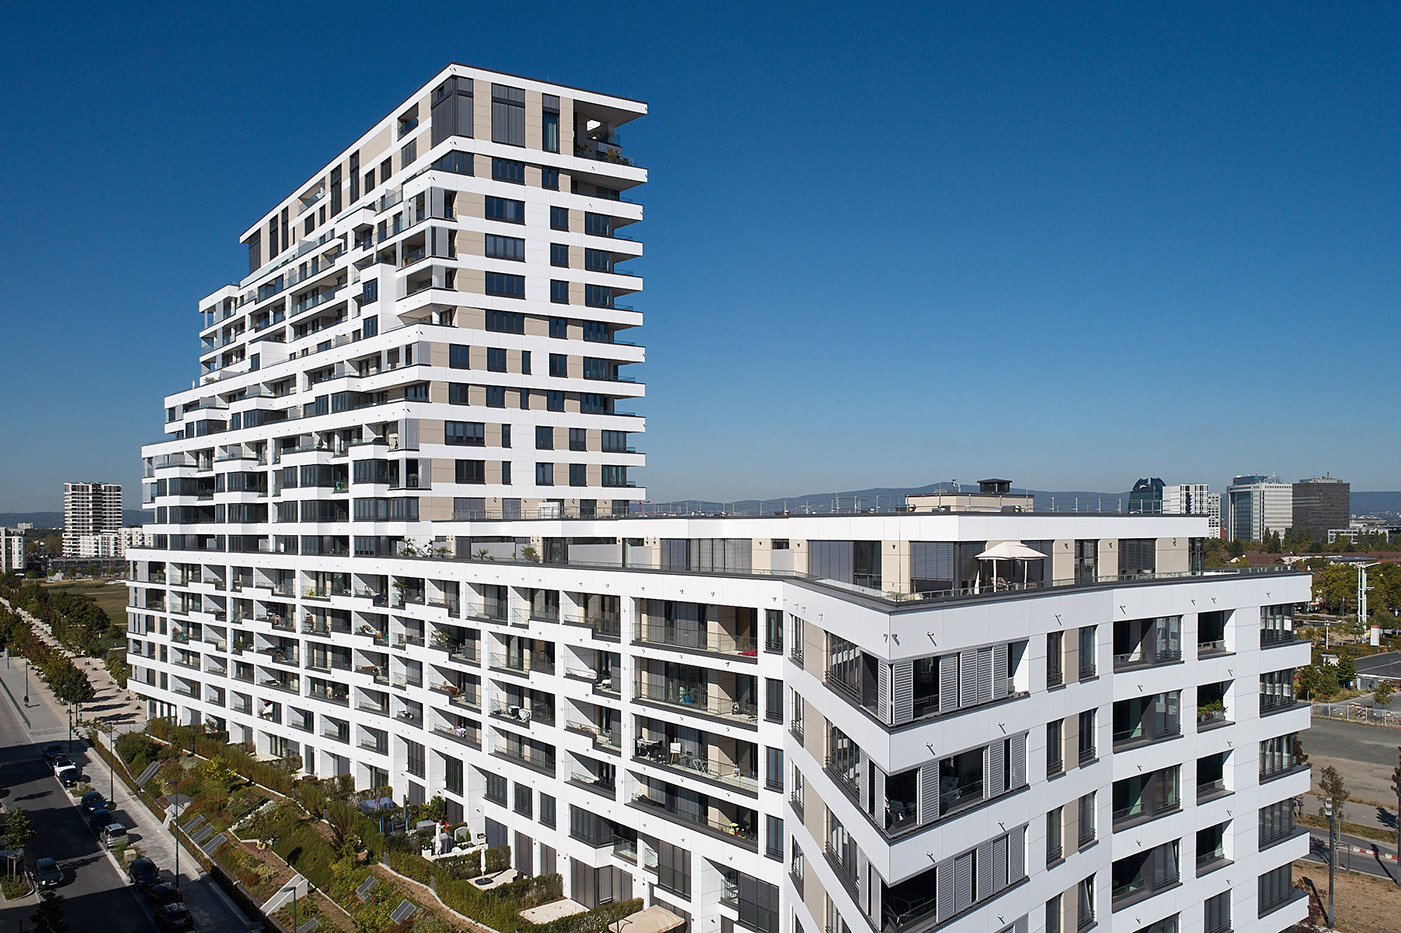 Projekt Fassadenbau Prädium in Frankfurt